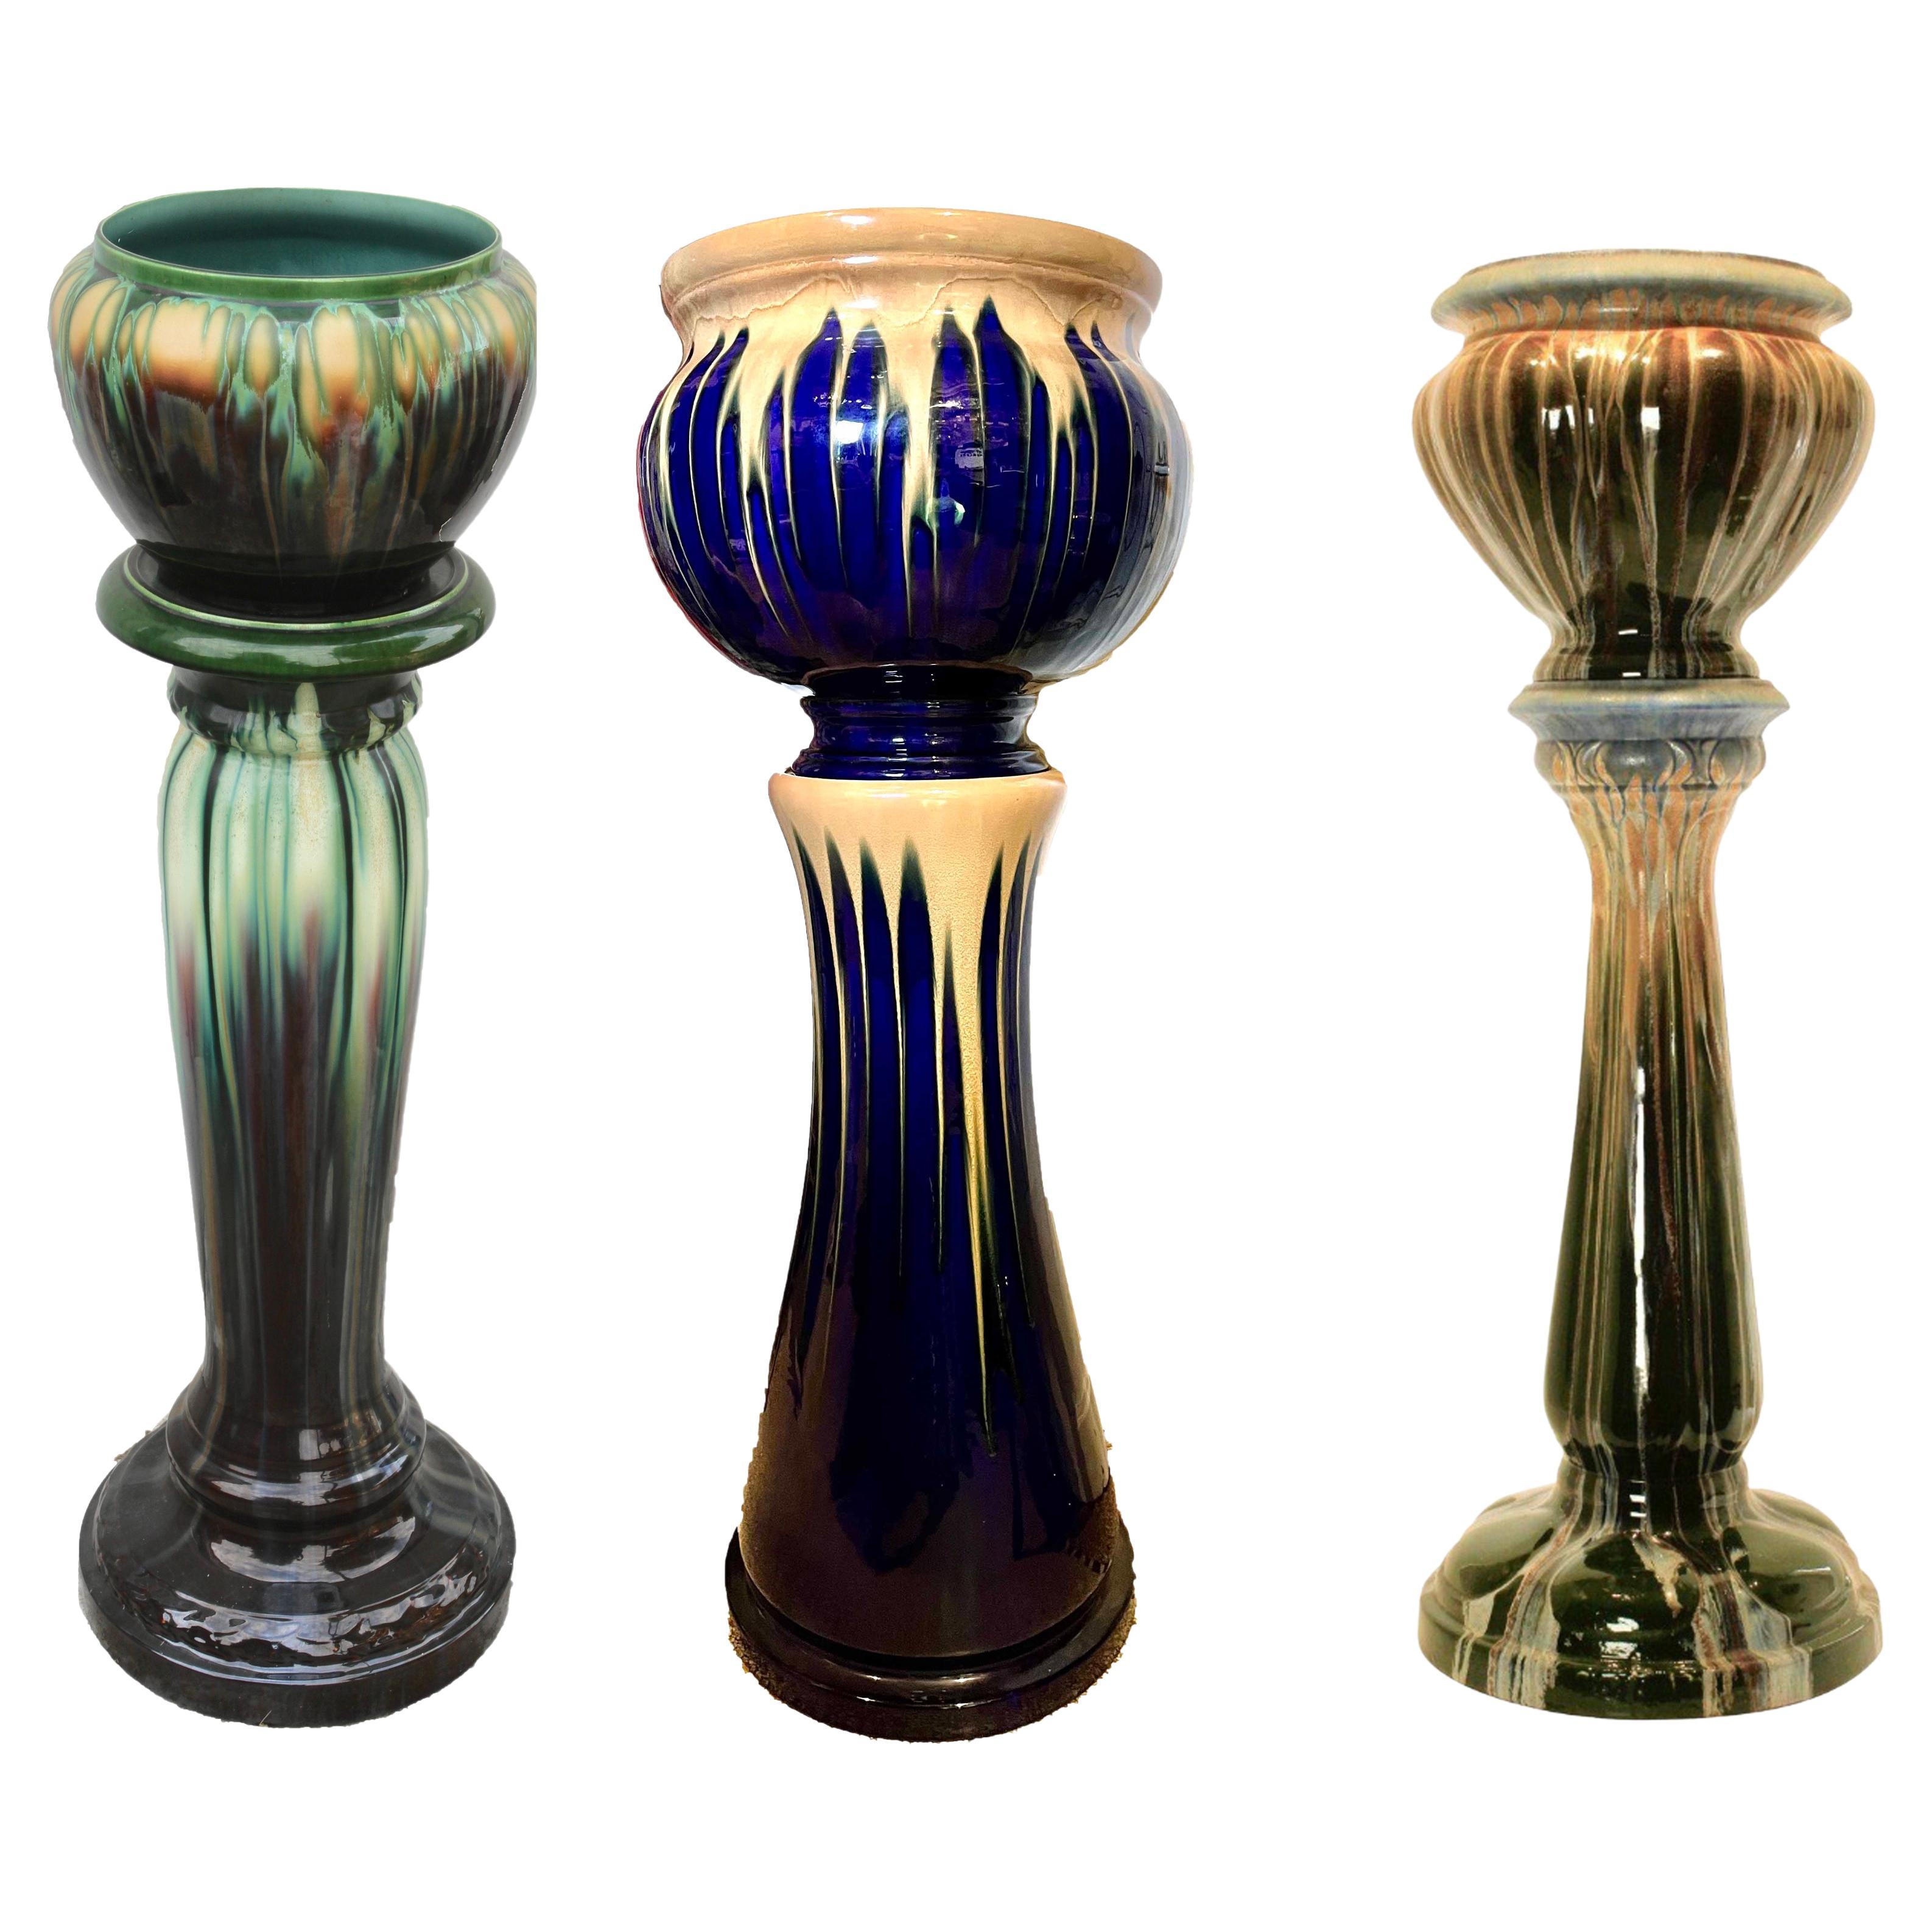 3 Art Nouveau Glazed Earthenware Columns and Planters 1900s